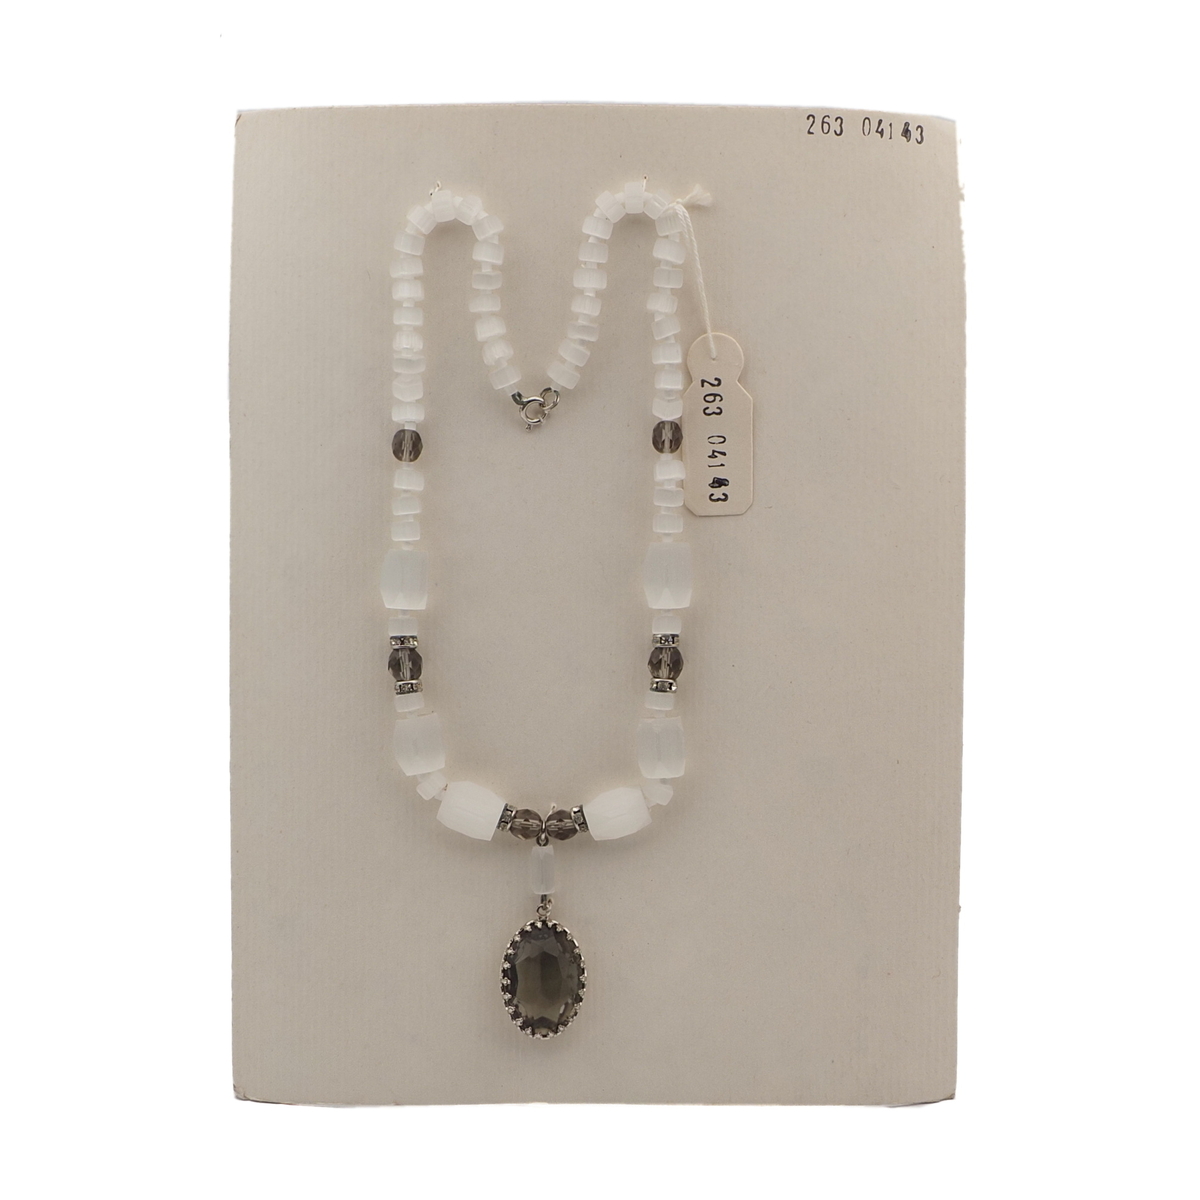 Vintage Czech smoky rhinestone pendant necklace satin atlas glass beads 